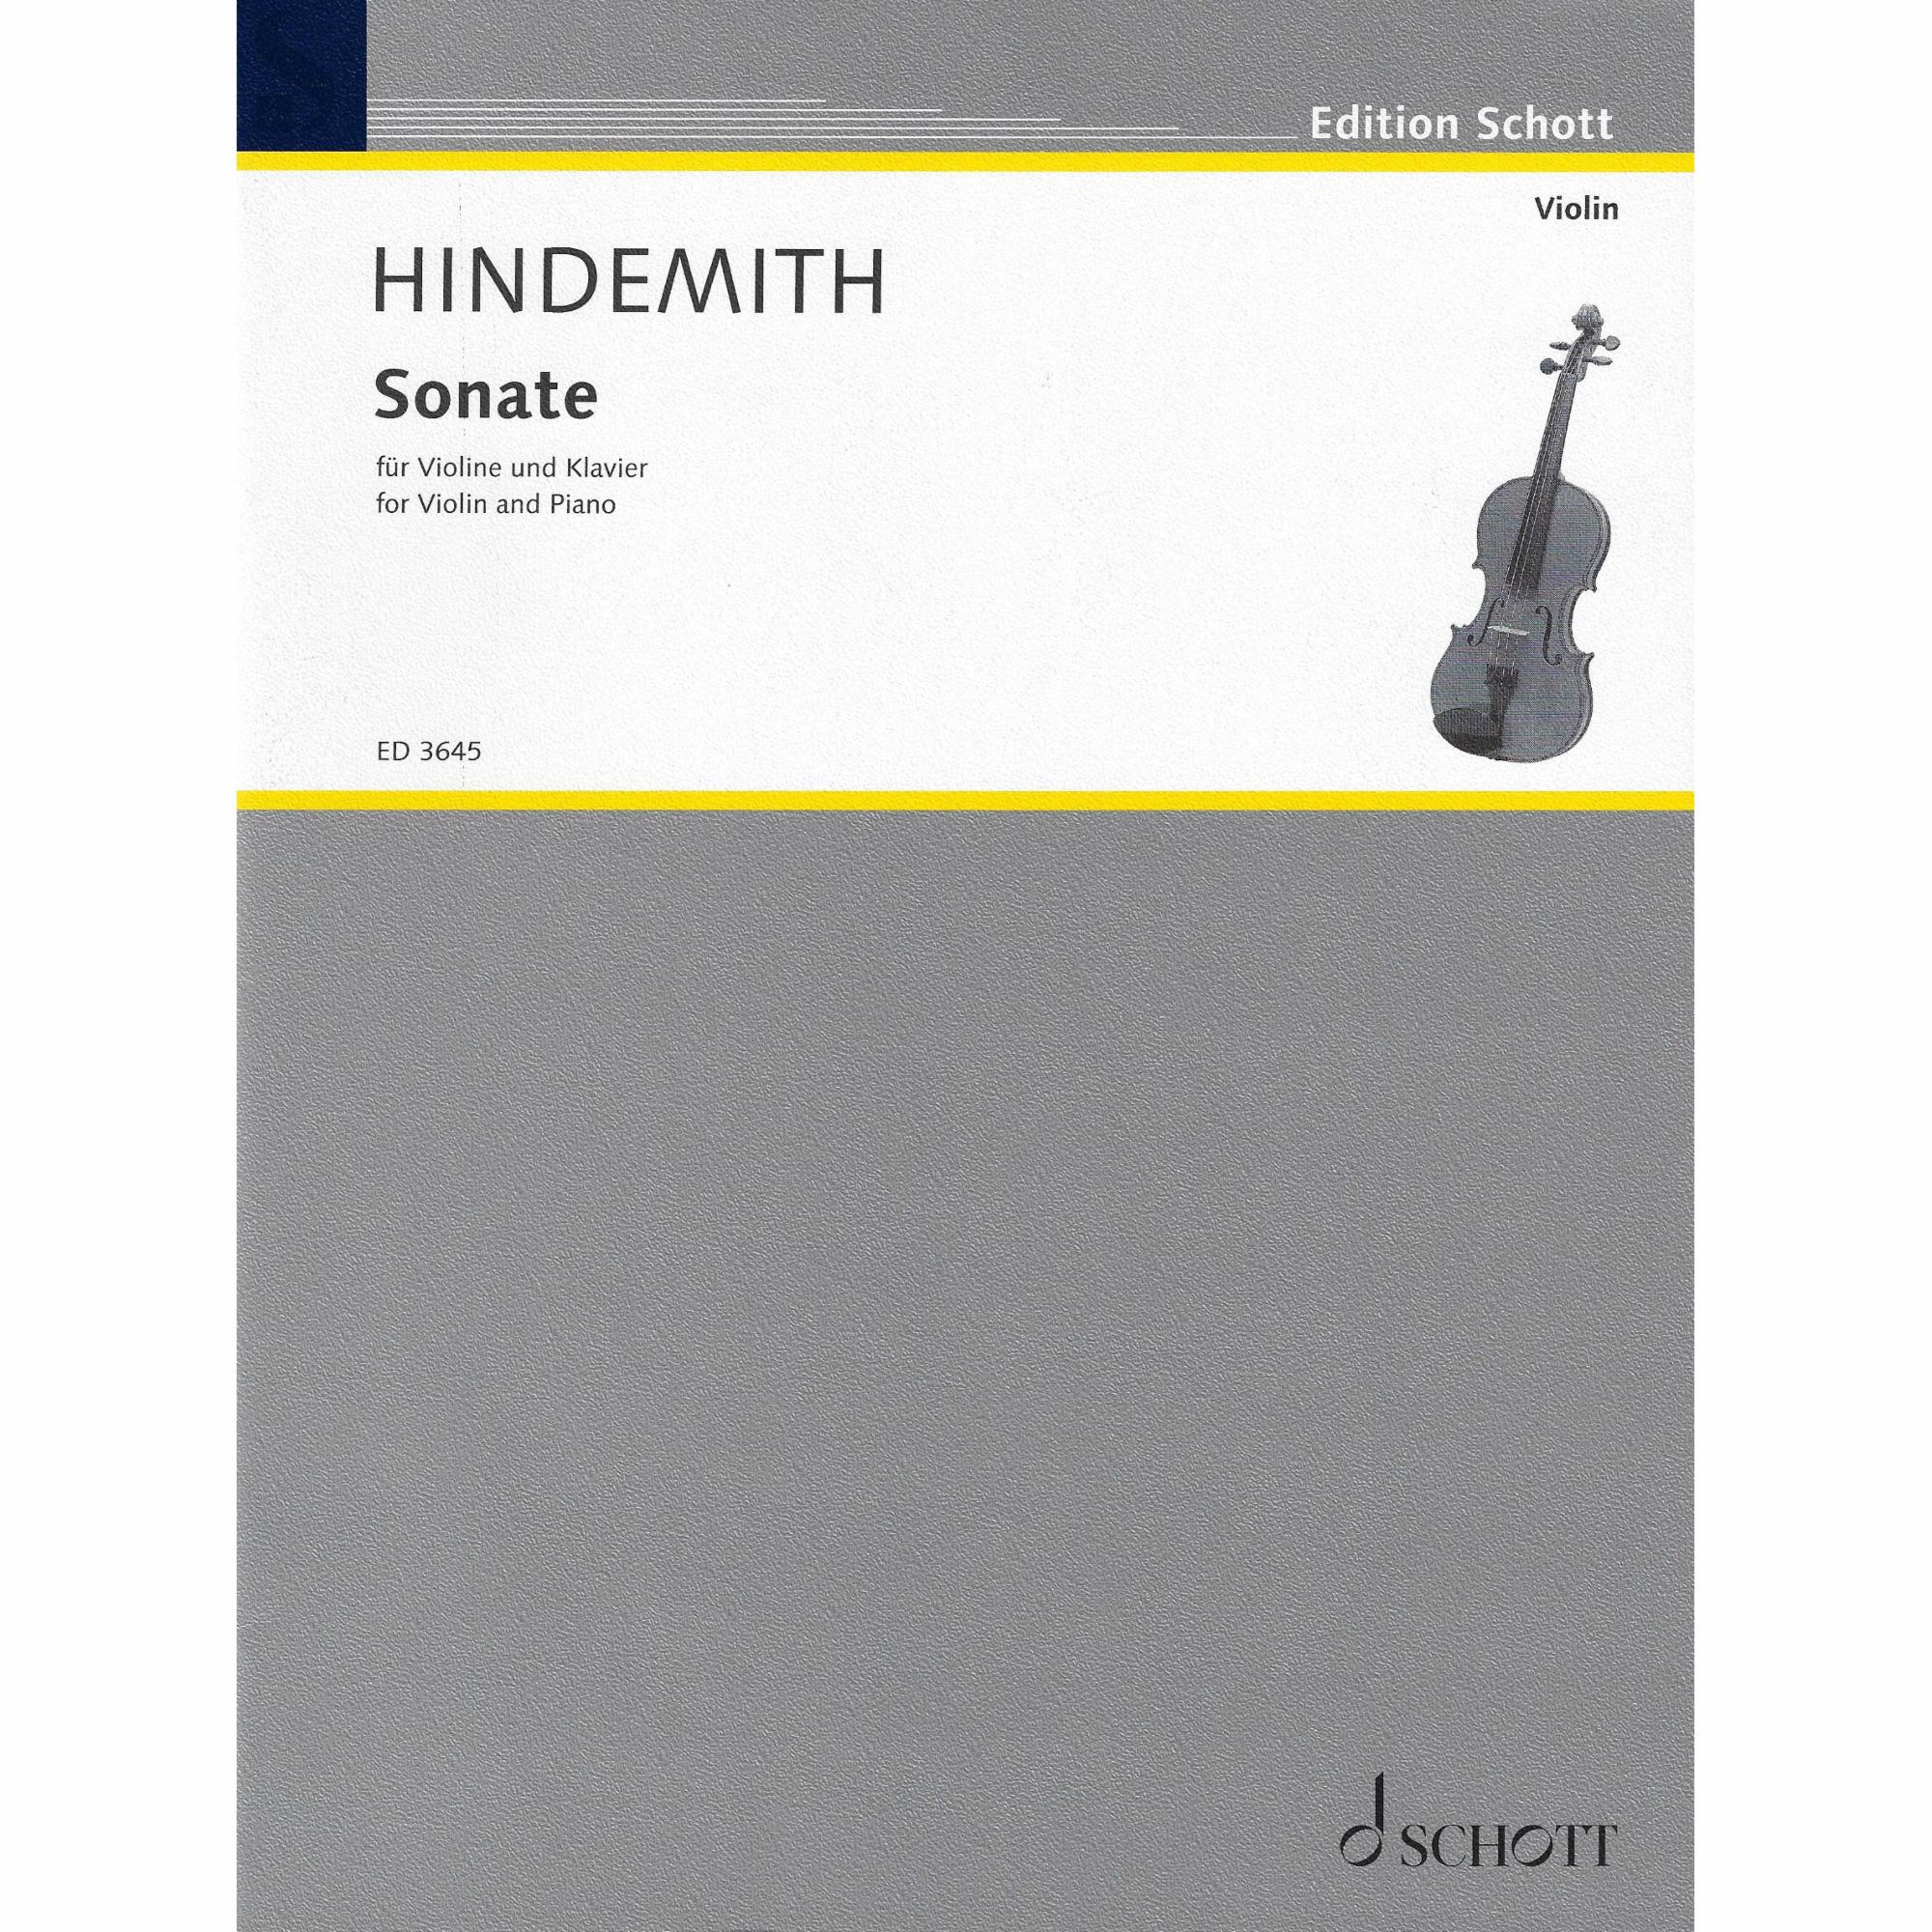 Hindemith -- Sonata (1939) for Violin and Piano